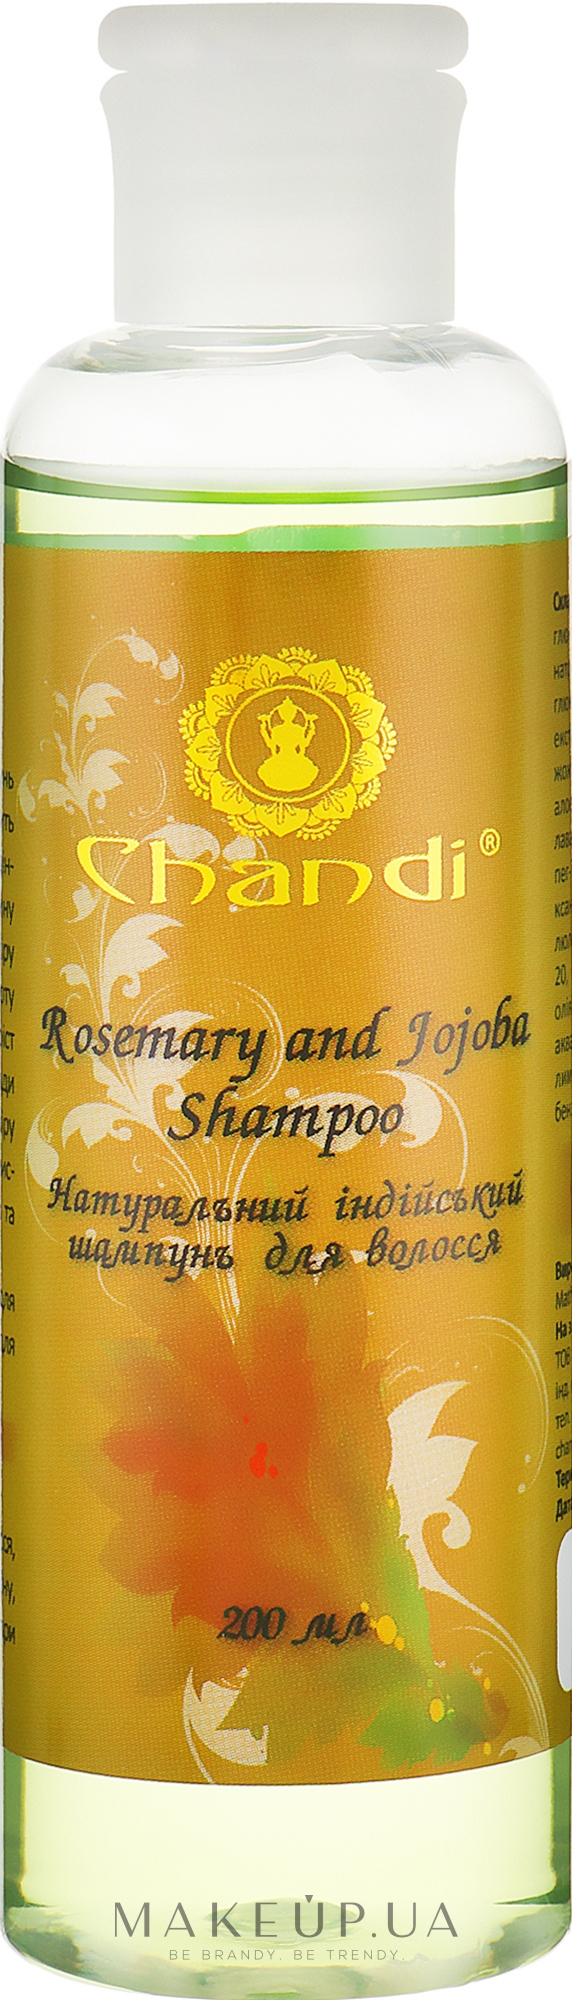 Натуральний індійський шампунь - Chandi Rosemary and Jojoba Shampoo — фото 200ml